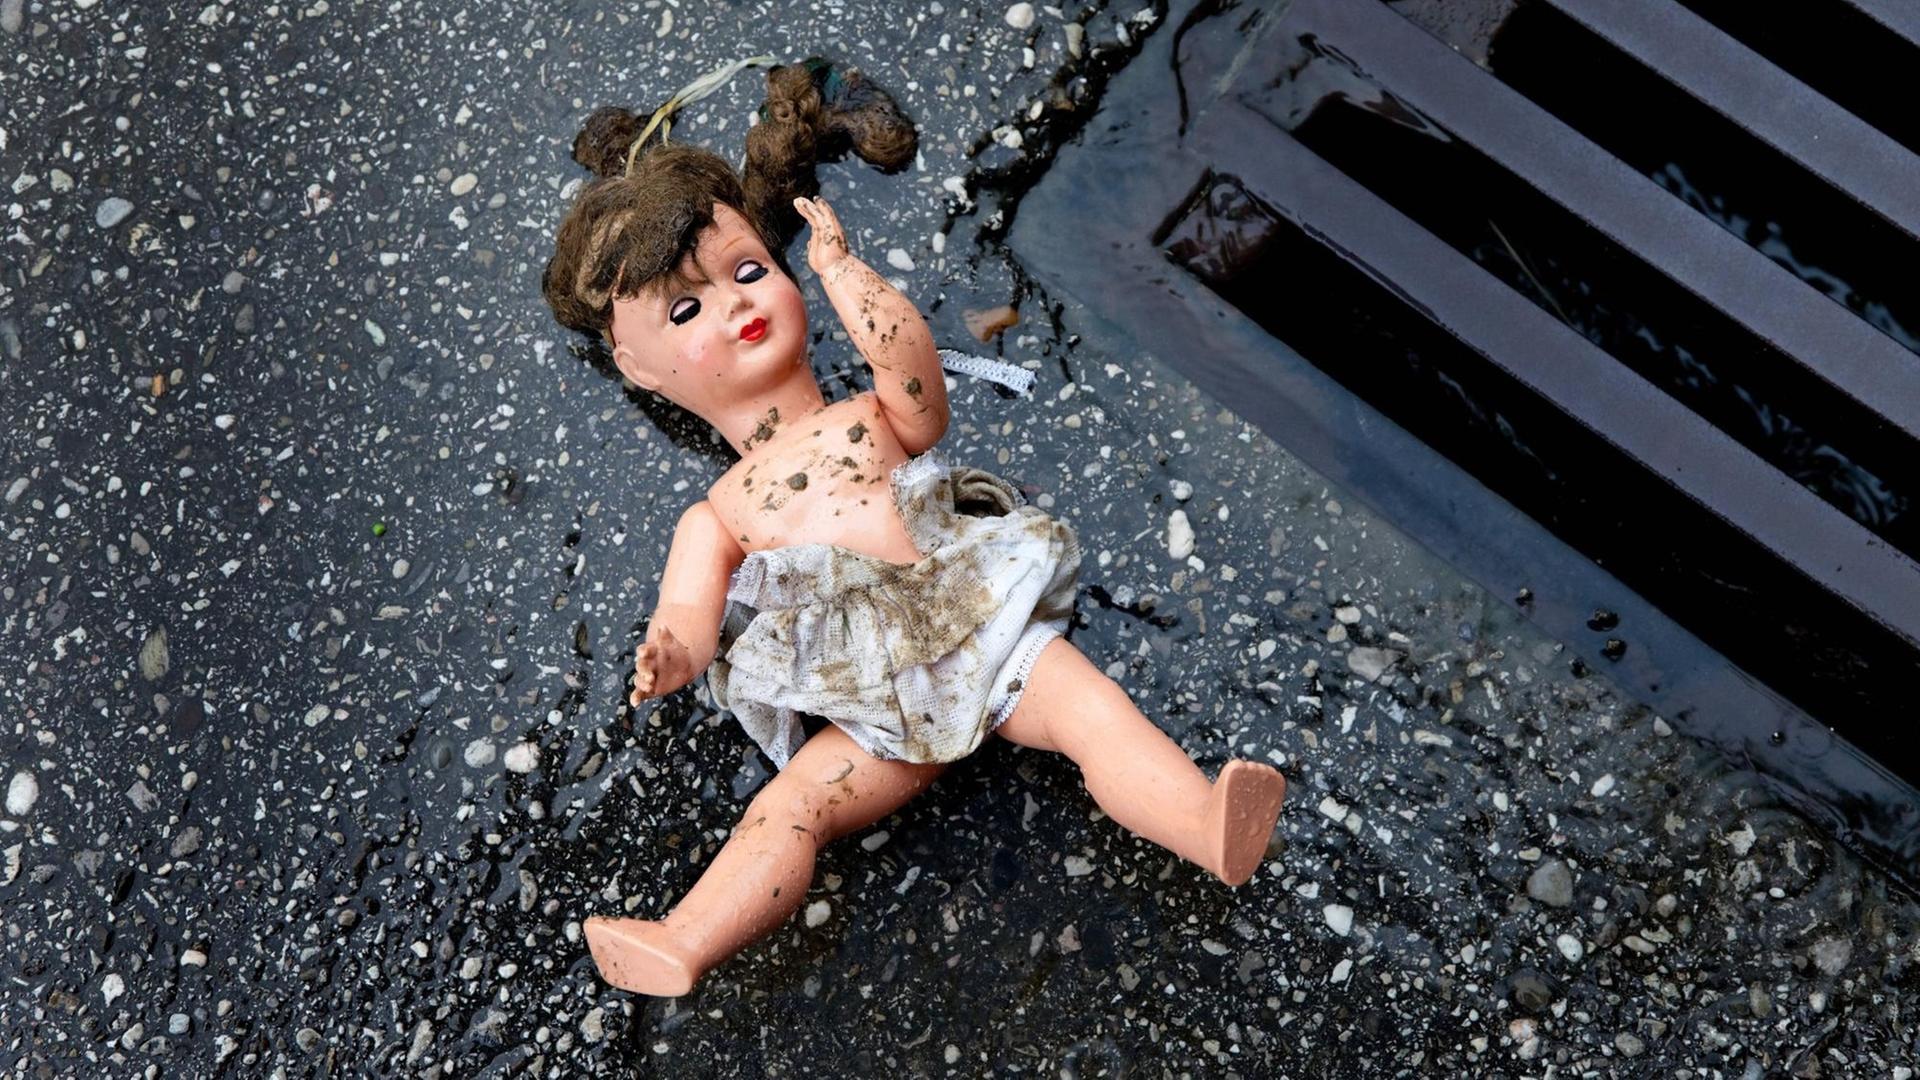 Zu sehen ist eine Puppe mit schmutzigem Kleid, die auf dem Boden neben einem Gulli liegt.